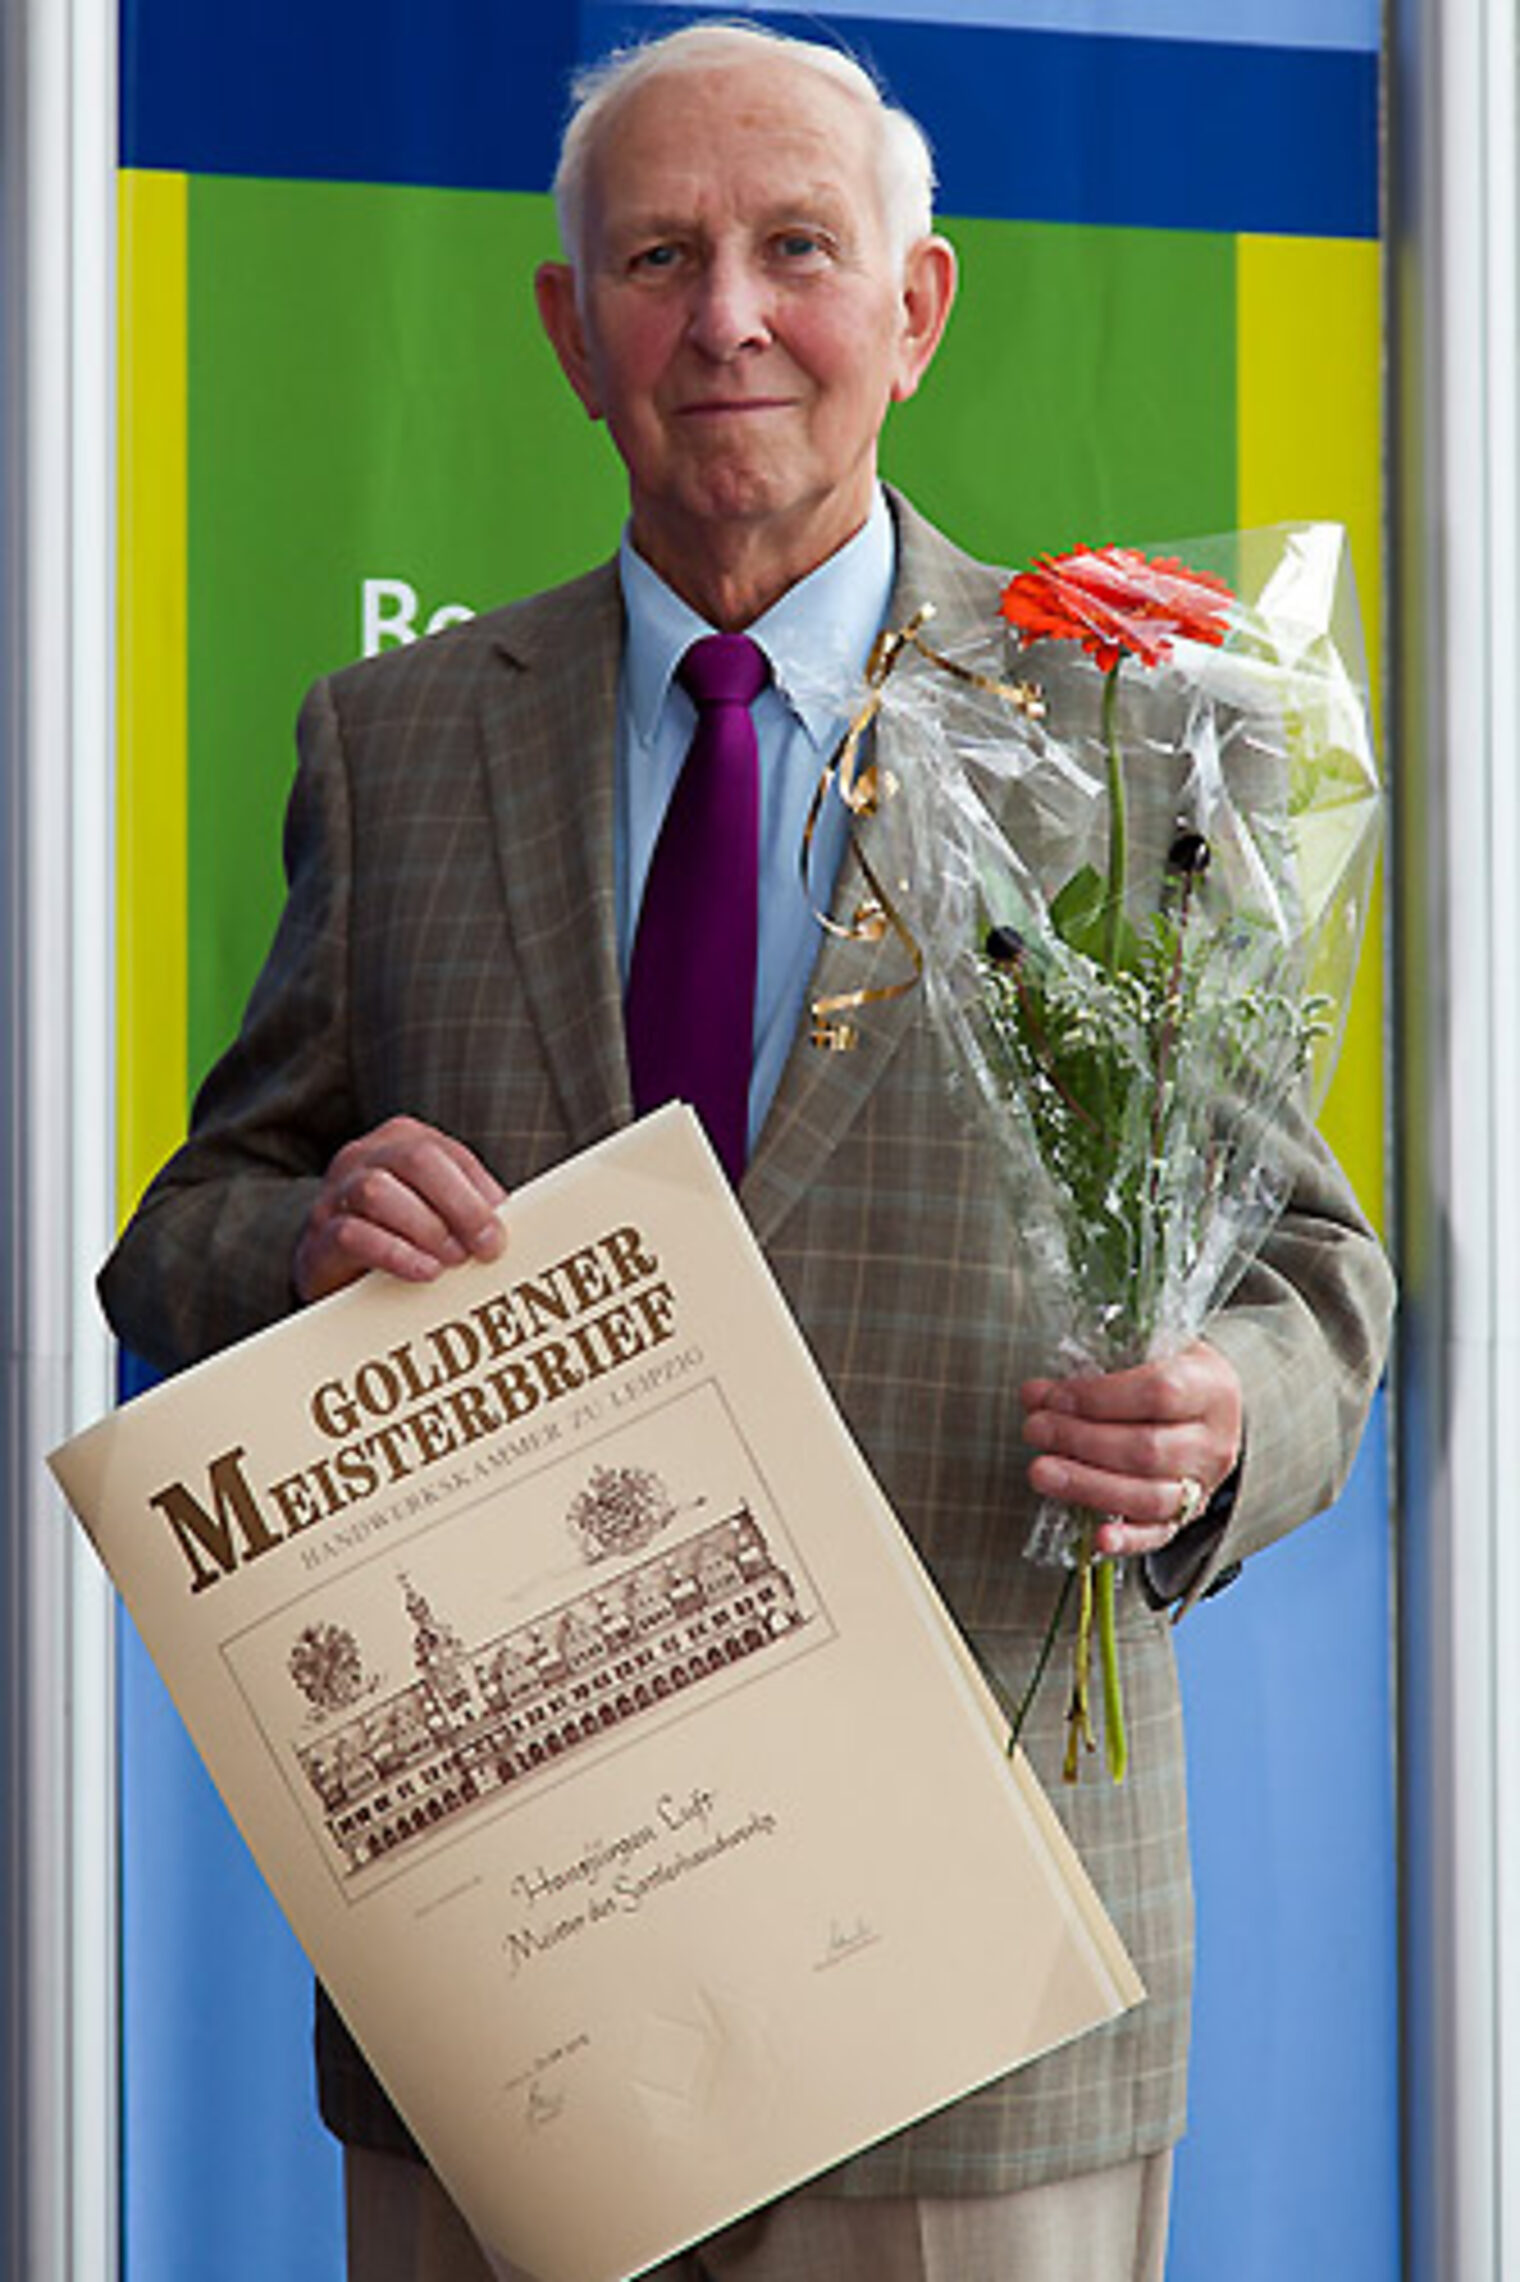 Verleihung der Goldenen Meisterbriefe 2012 25